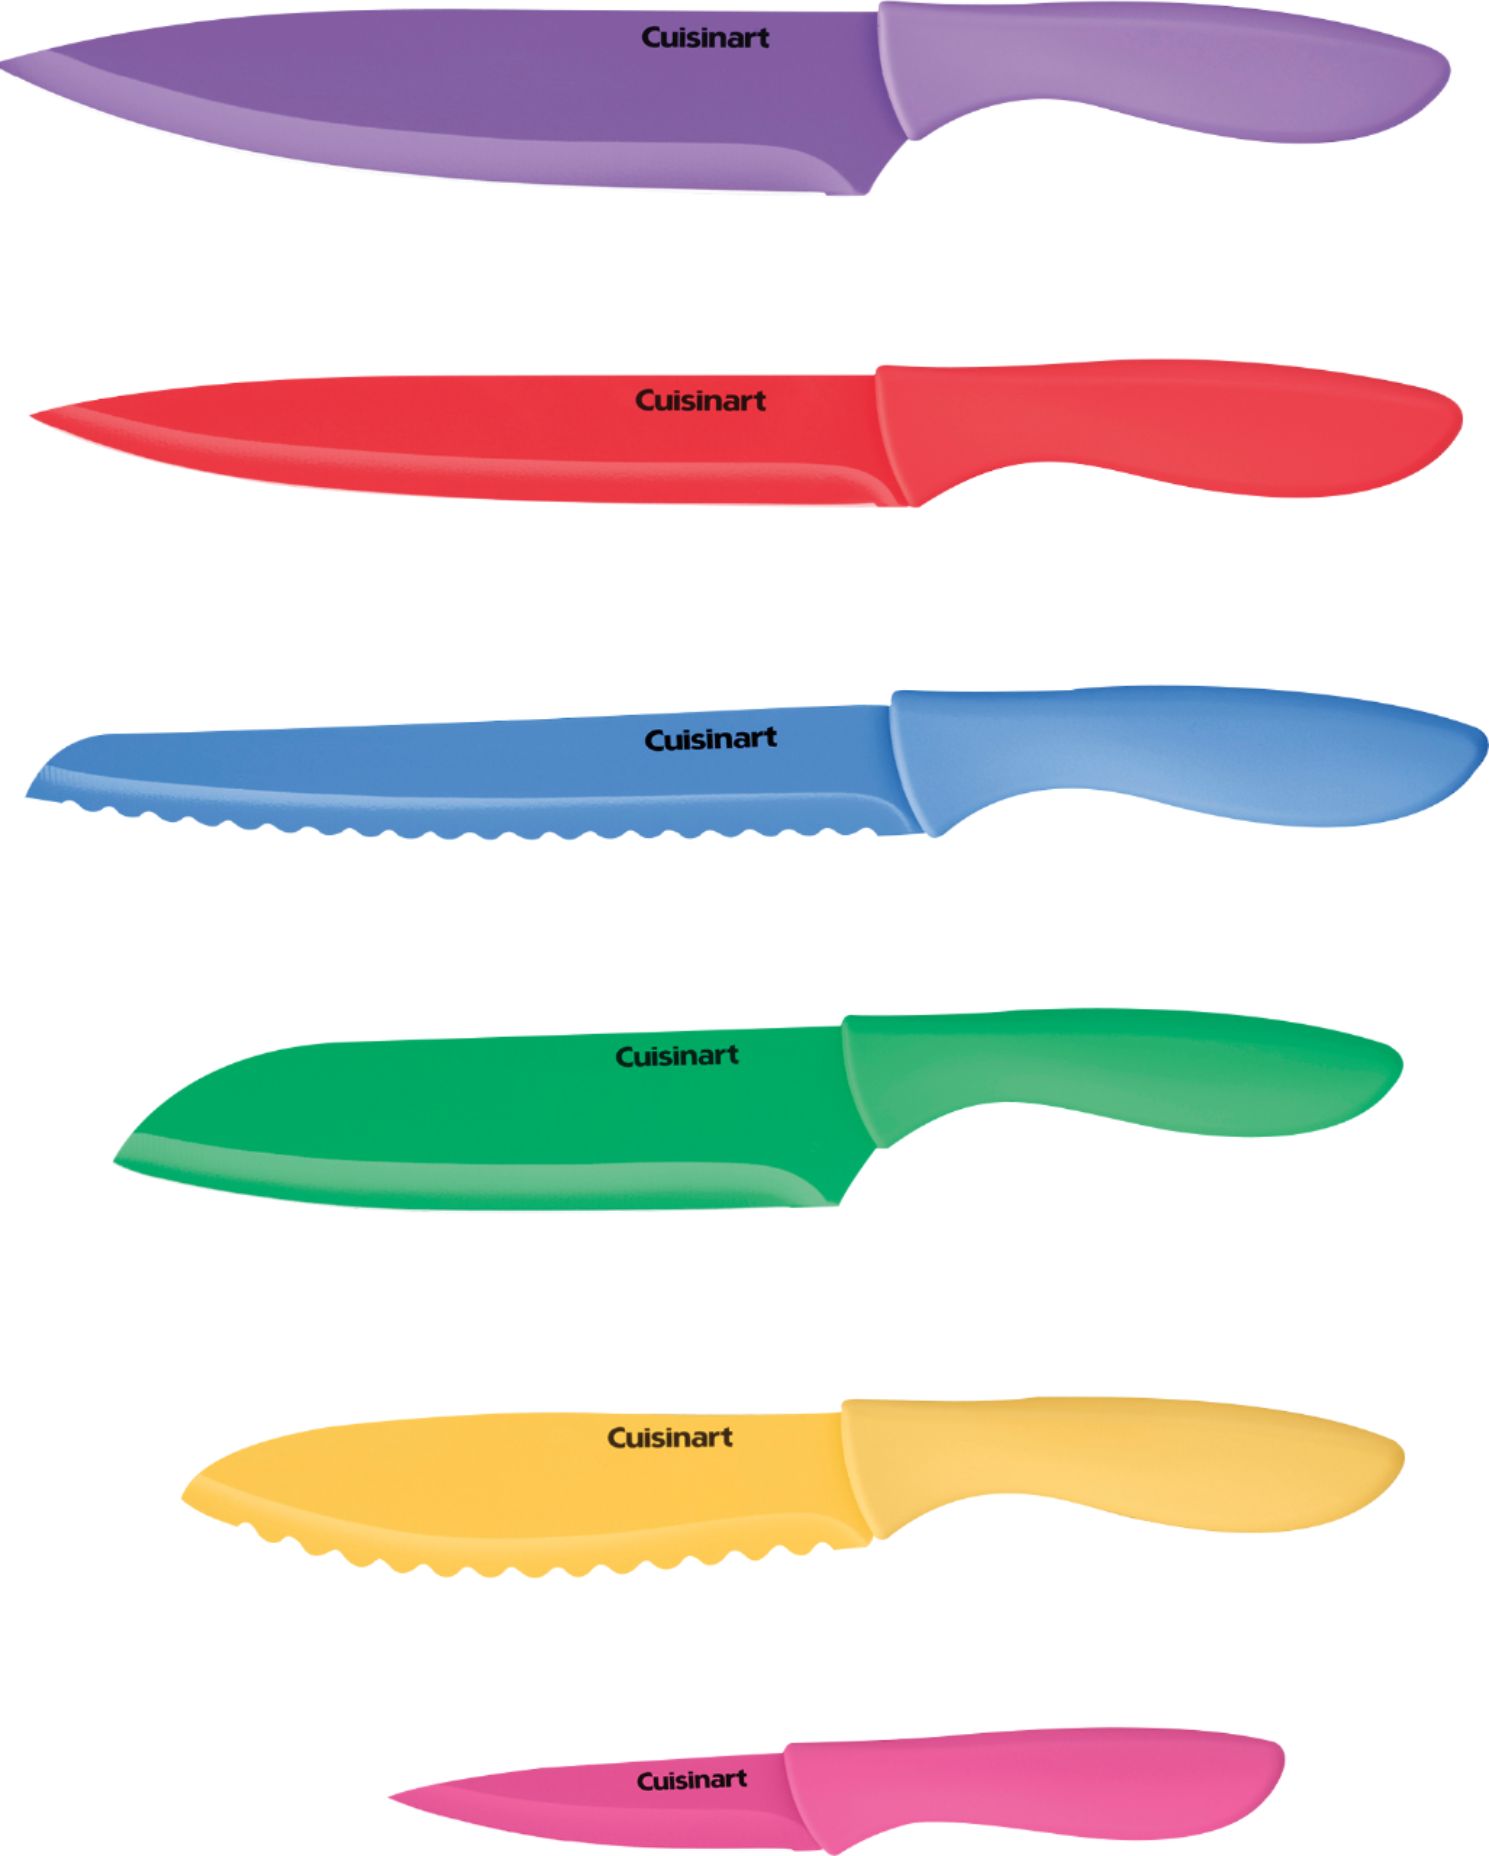 Left View: Cuisinart - Advantage 12-Piece Knife Set - Multicolor